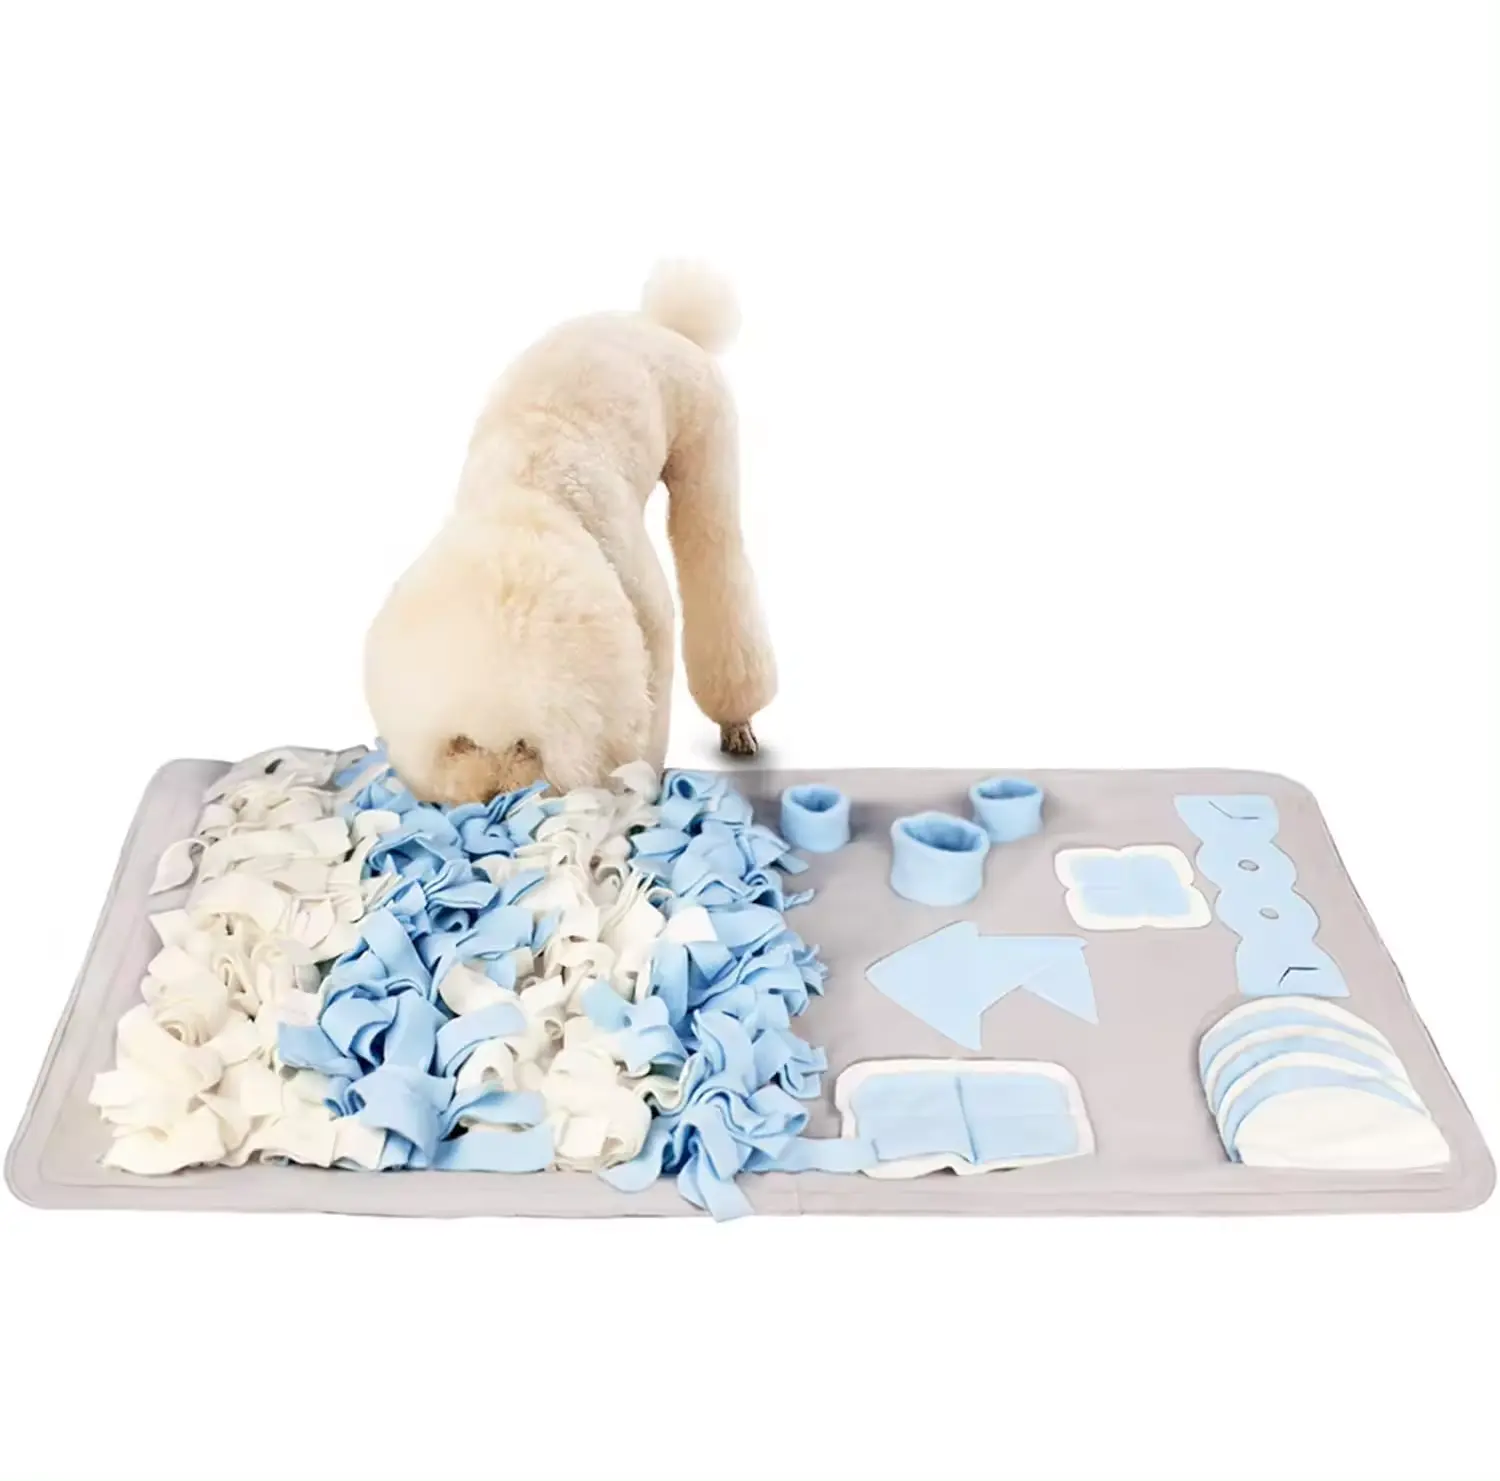 Pet aktivite zenginleştirme köpek koklama Mat gıda oyunu battaniye bulmaca halı burun iş köpekler için snudogs Mat